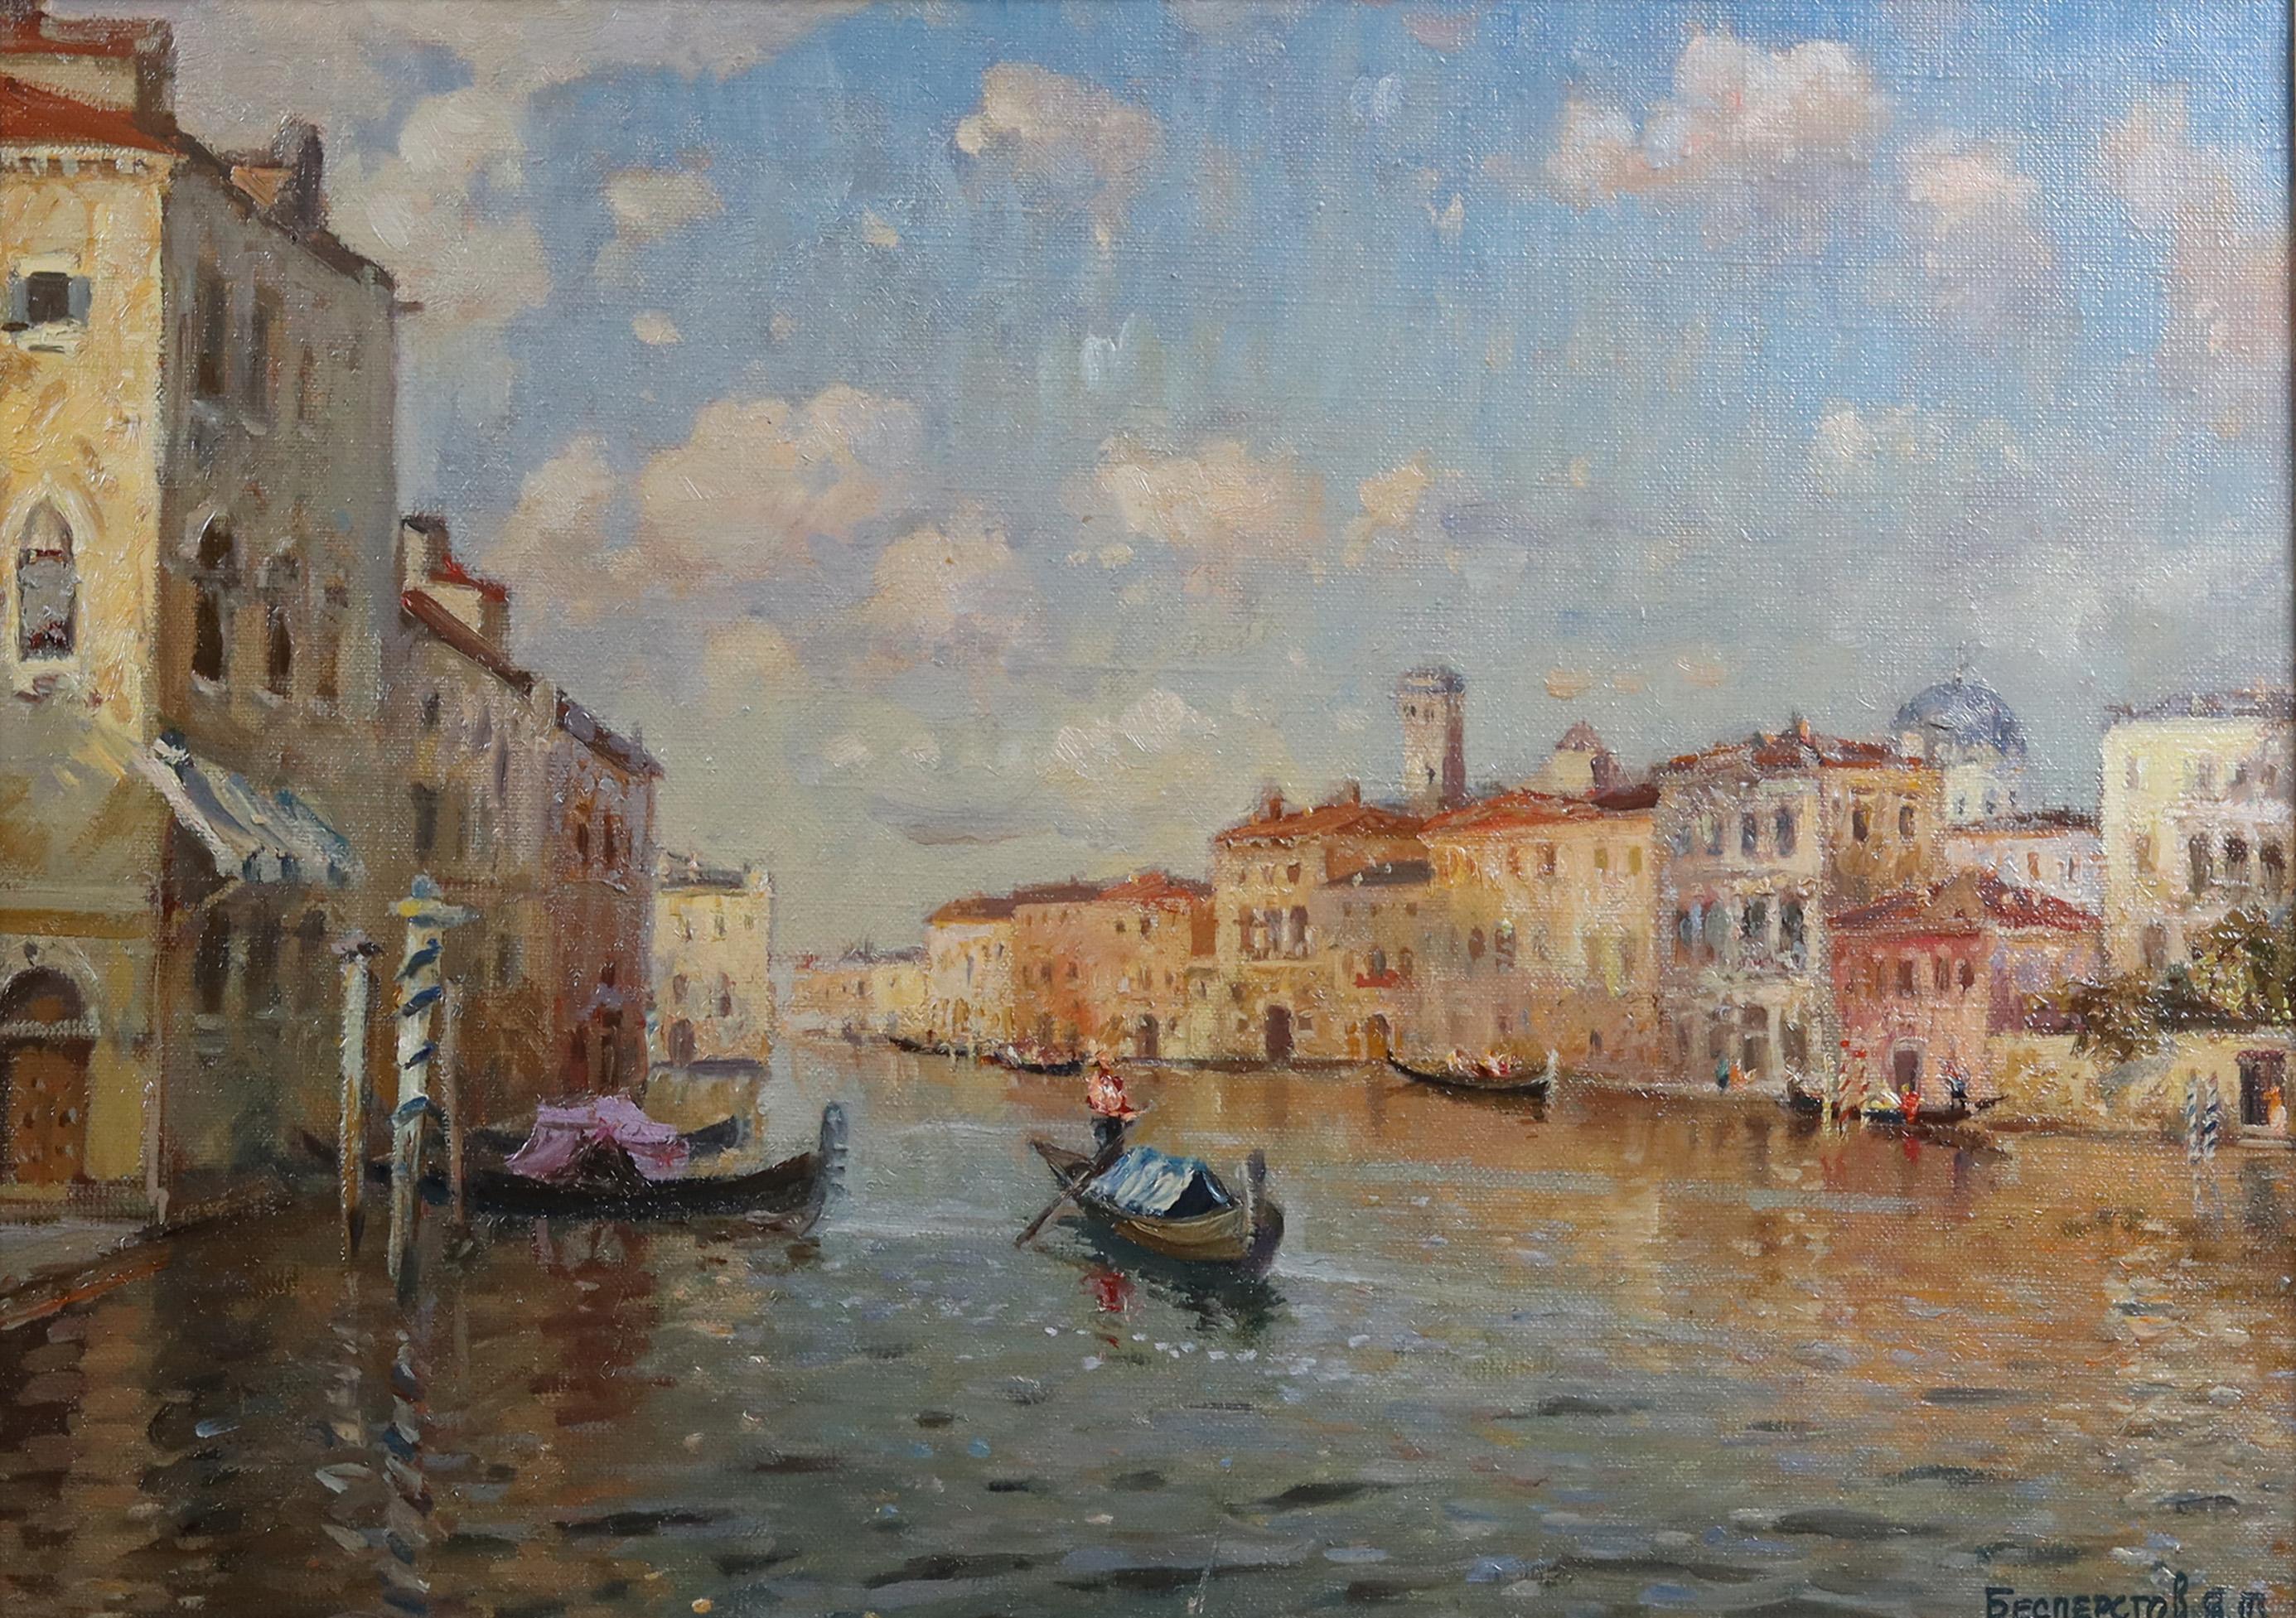 Landscape Painting Yakov Besperstov -  Une scène de canal vénitien